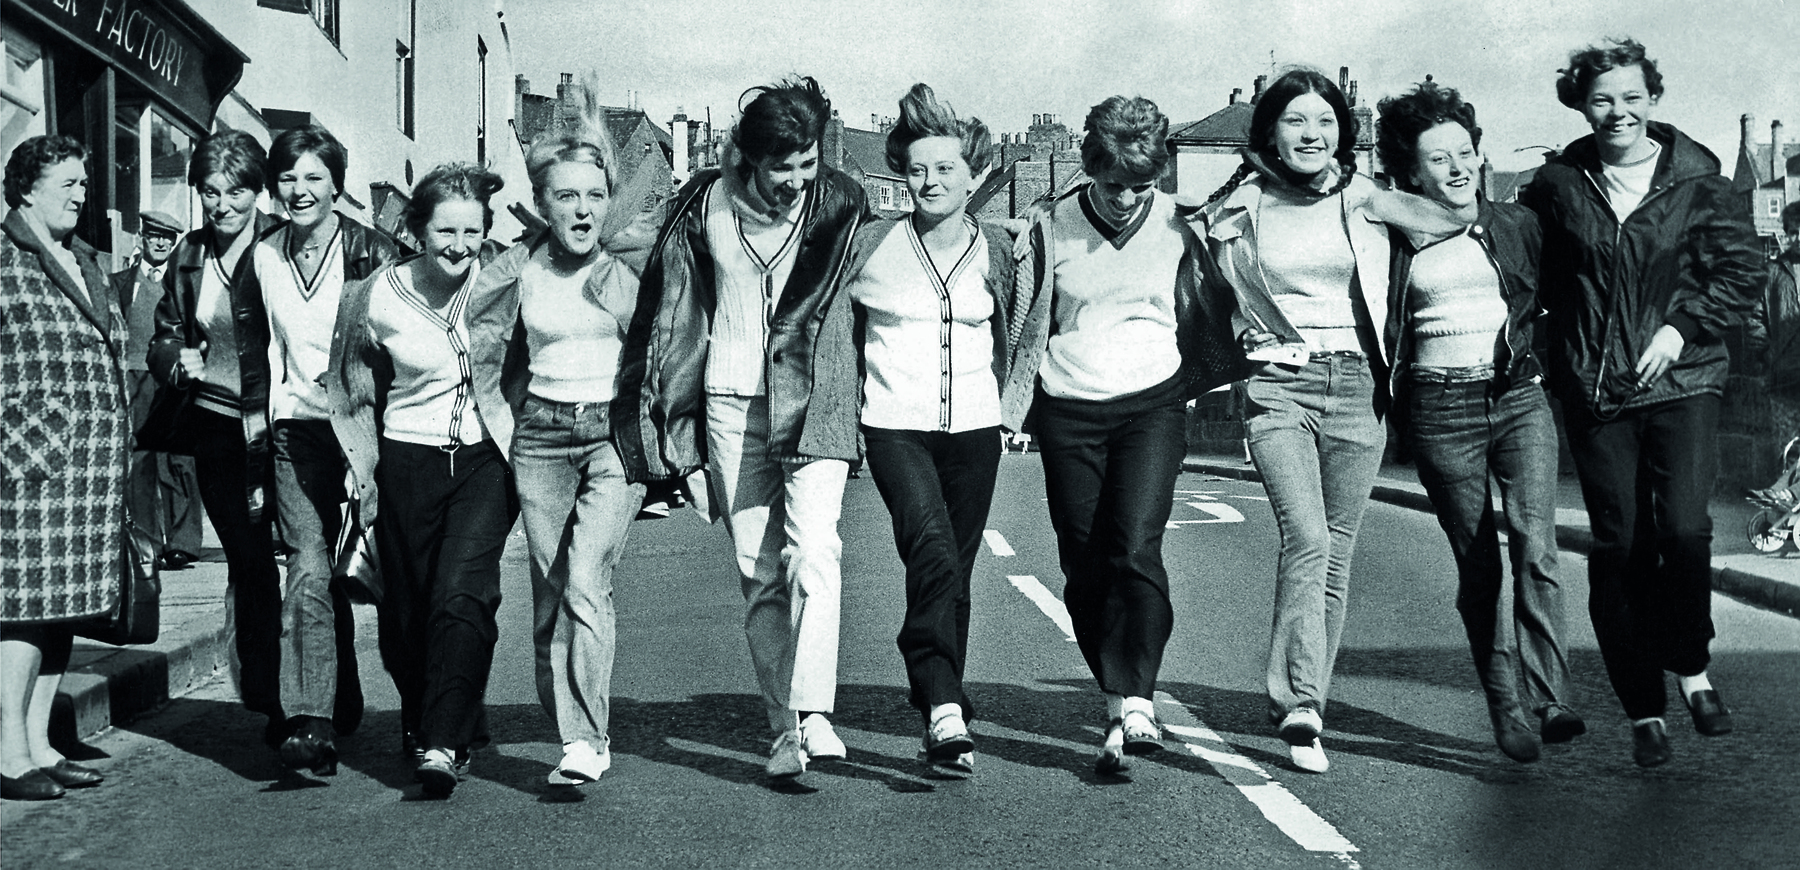 Fotografia em preto e branco. Grupo de jovens sorridentes andando abraçados, lado a lado.